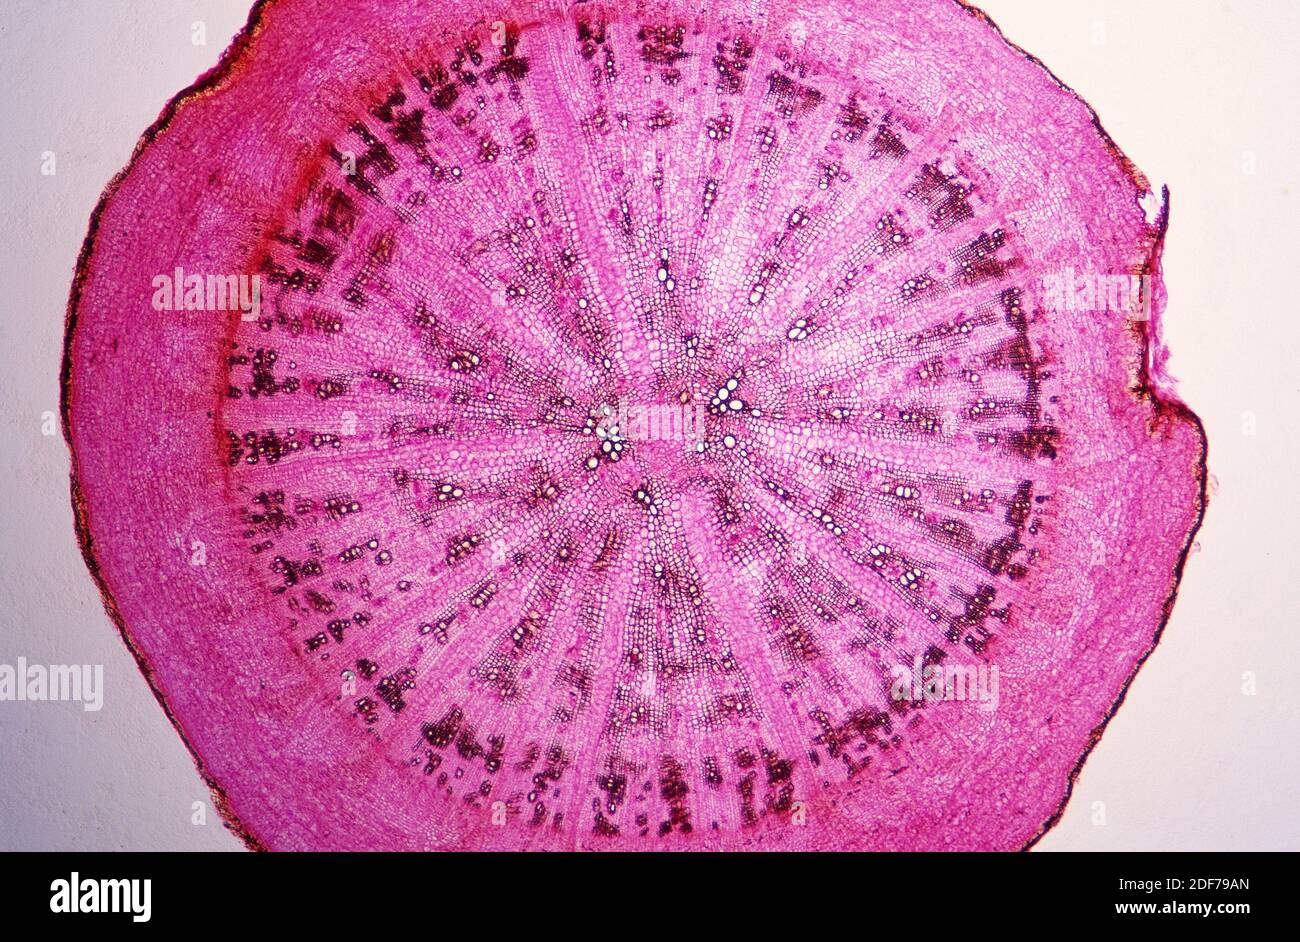 Estructura de la raíz de dicotiledón, sección transversal que muestra epidermis, parénquima, flóem y xilema. Fotomicrografía. Foto de stock